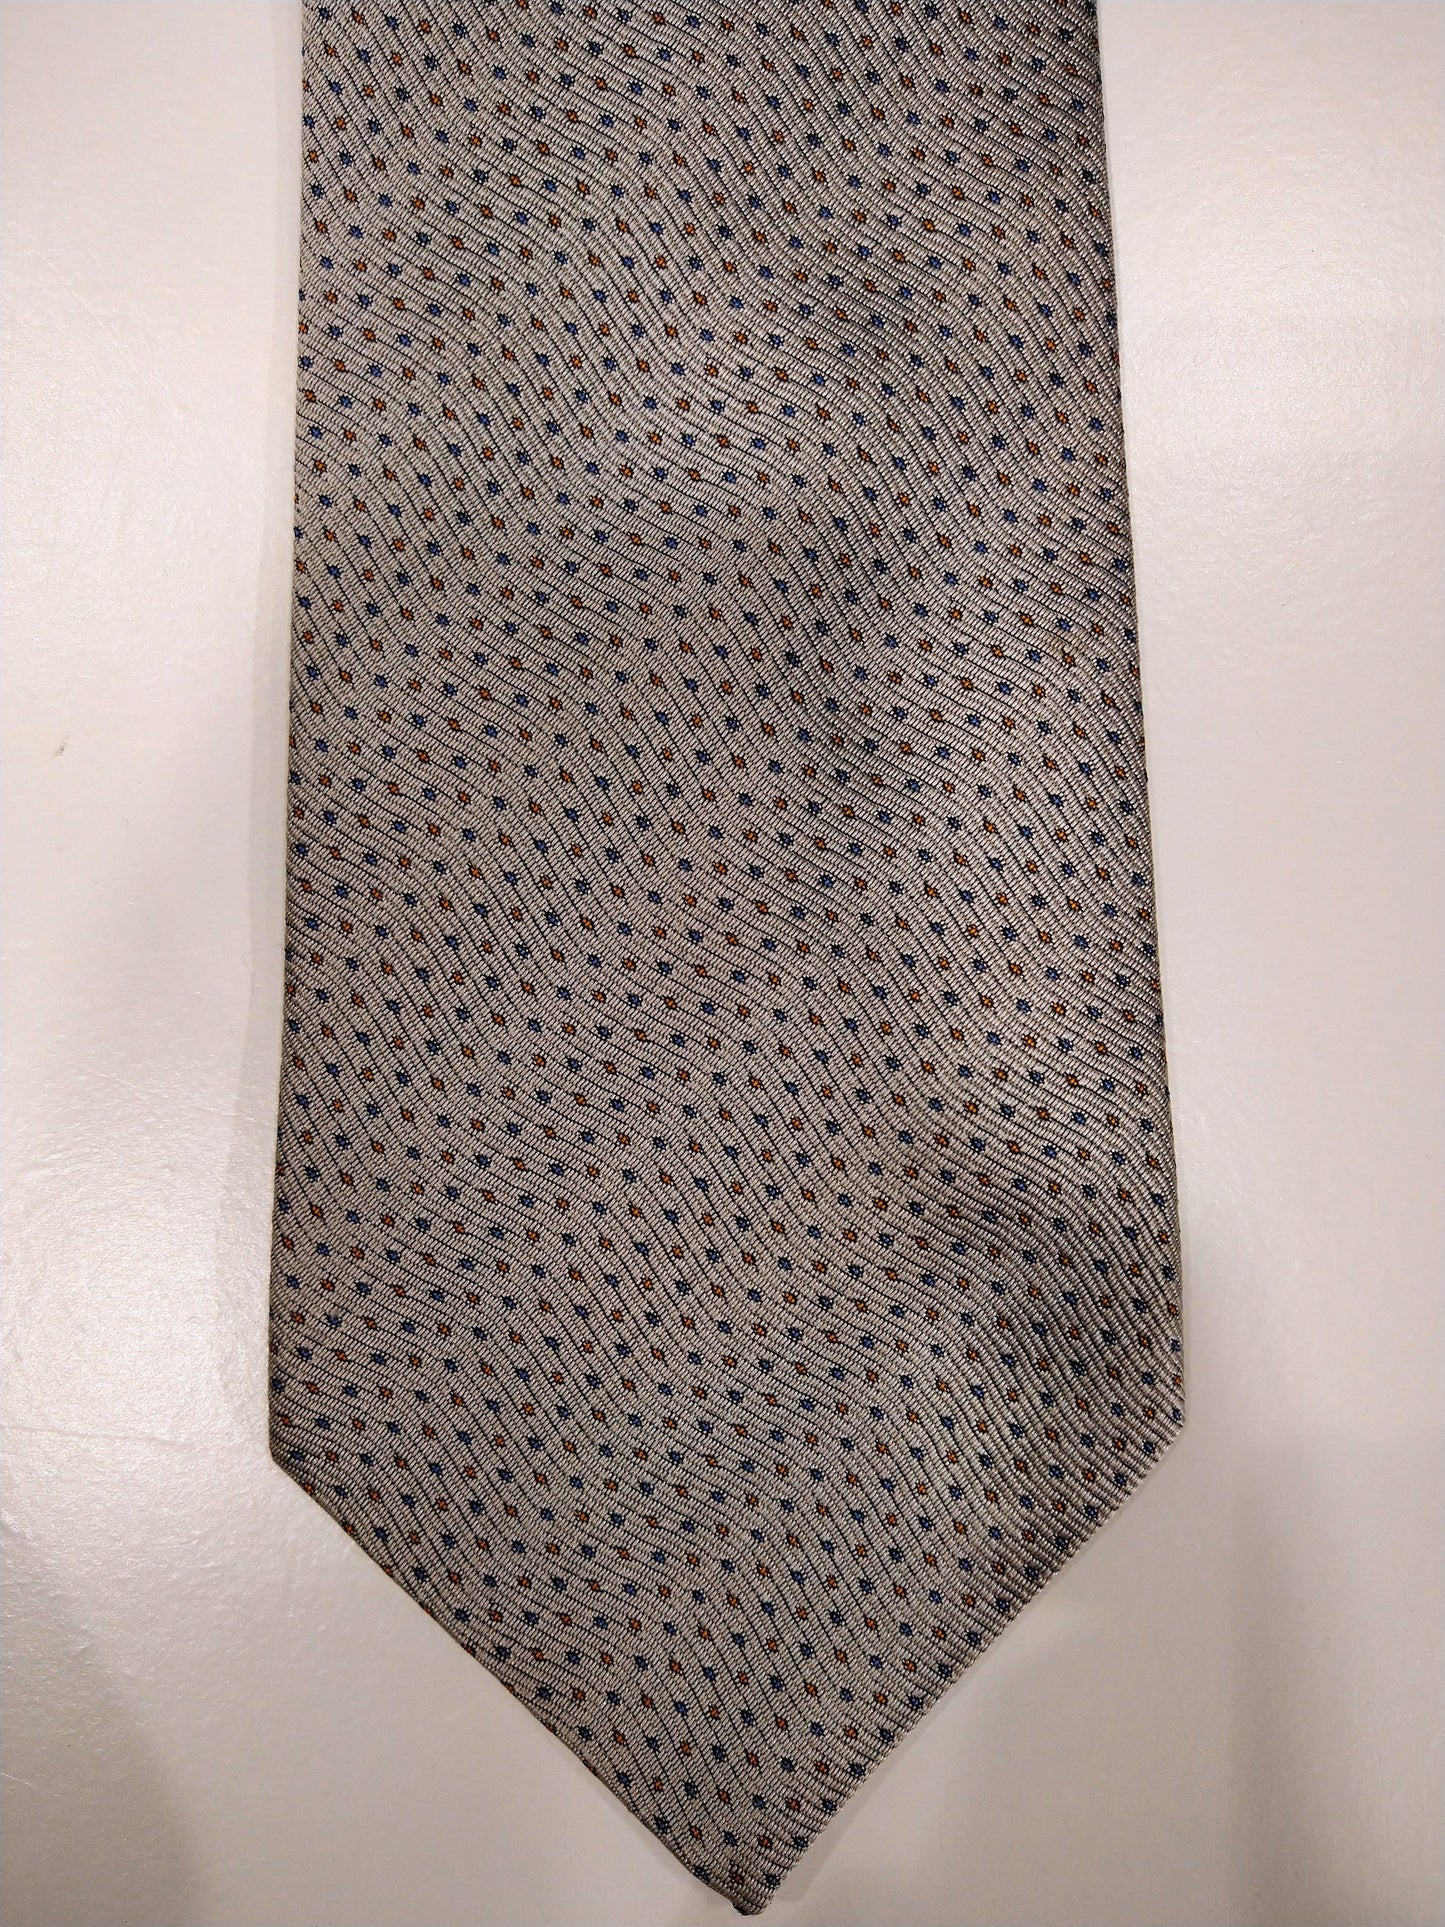 Cravate de design italienne x-o-x-o uomo. Beige avec motif de boules bleues / marron.